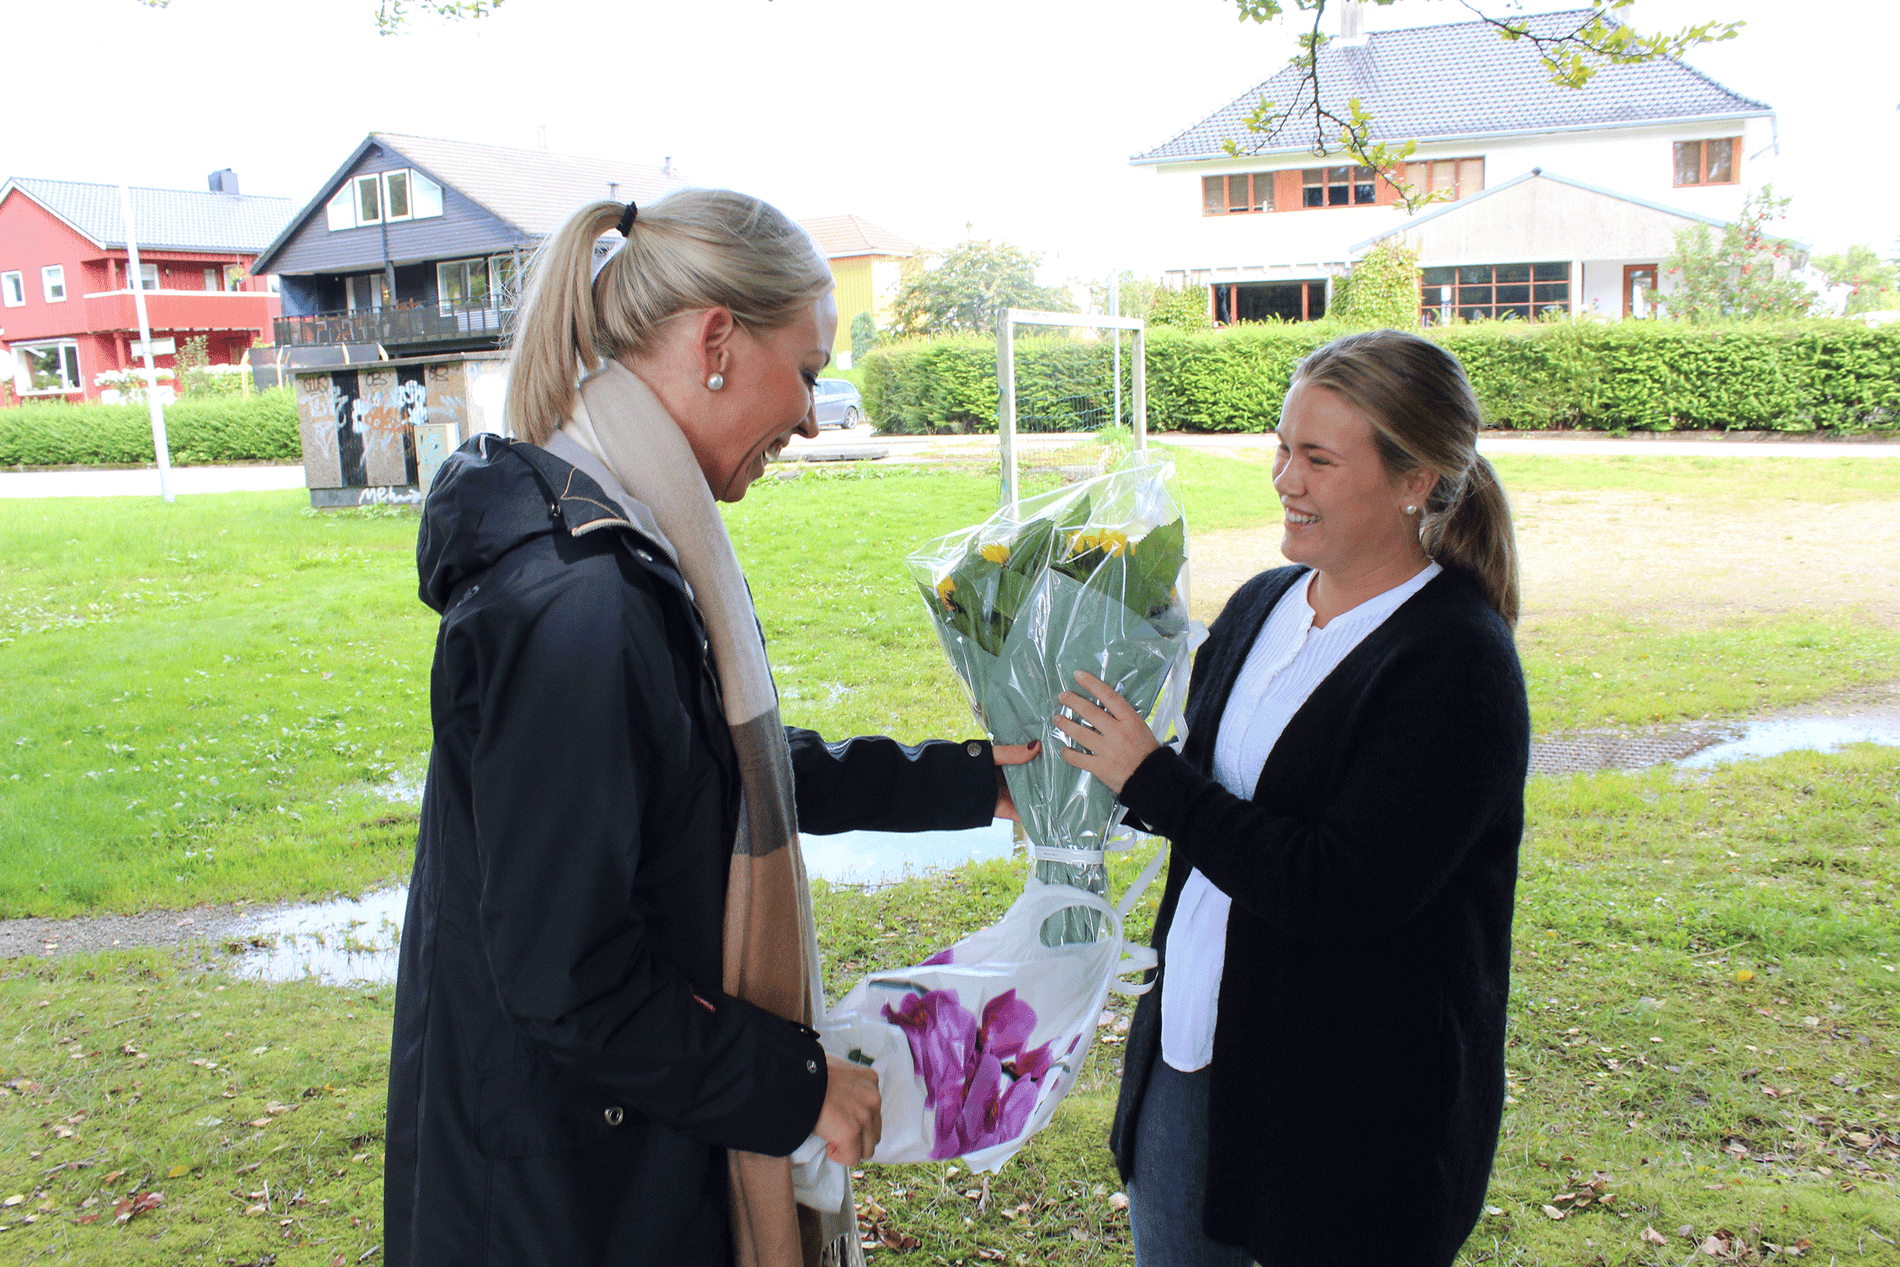 Hermanns ønsket å takke Tangen og tok med blomster da de traff hverandre igjen, to dager etter den ubehagelige hendelsen ved Mosvatnet. 